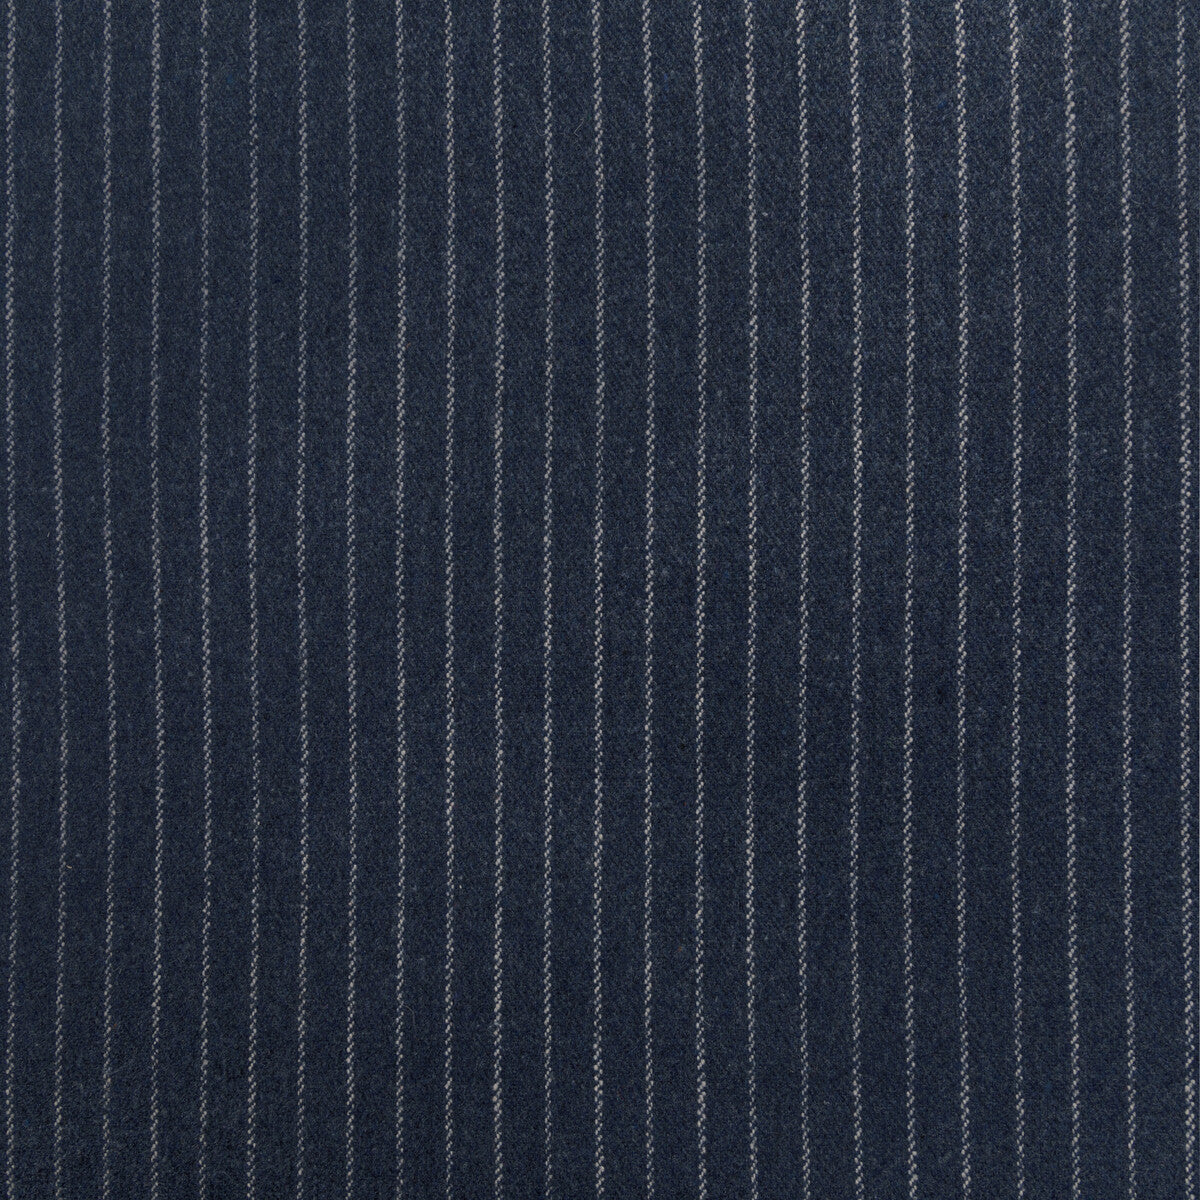 Kravet Design fabric in 36306-50 color - pattern 36306.50.0 - by Kravet Design